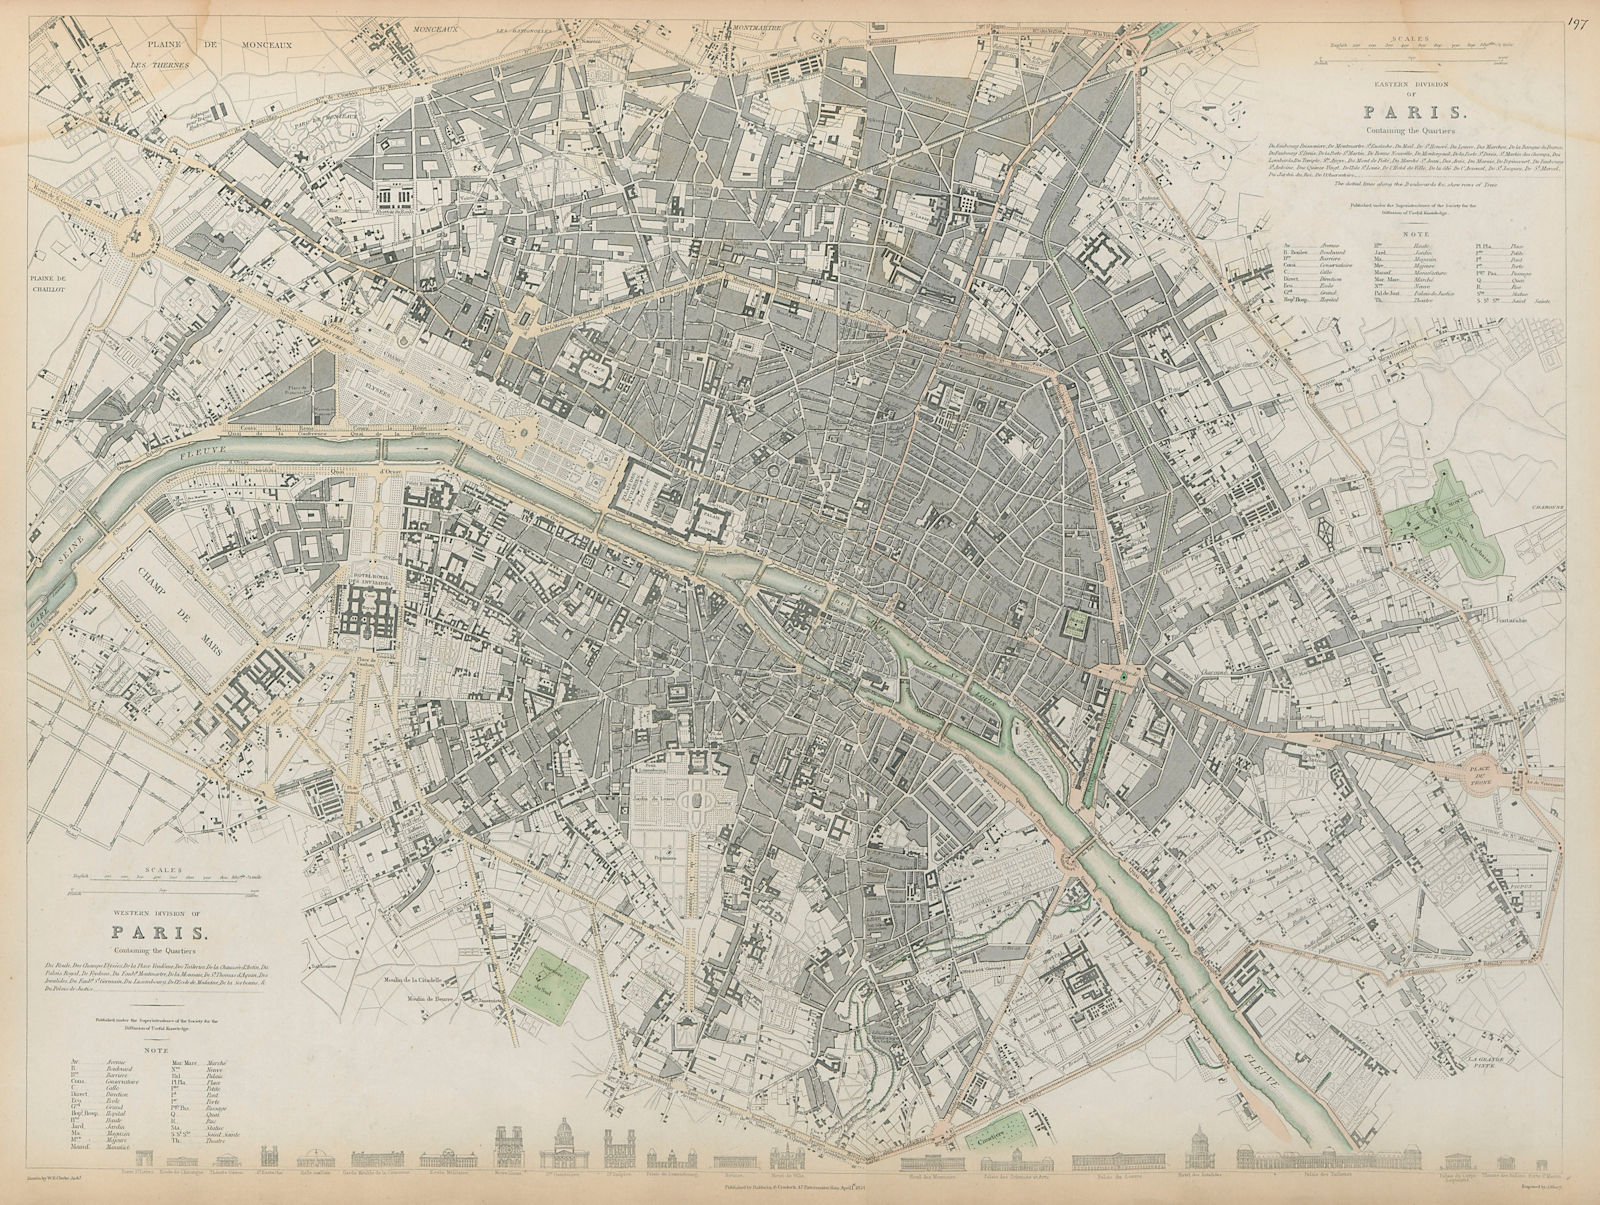 PARIS Antique city town map plan LARGE 55x40cm 2 sheets conjoined. SDUK 1844